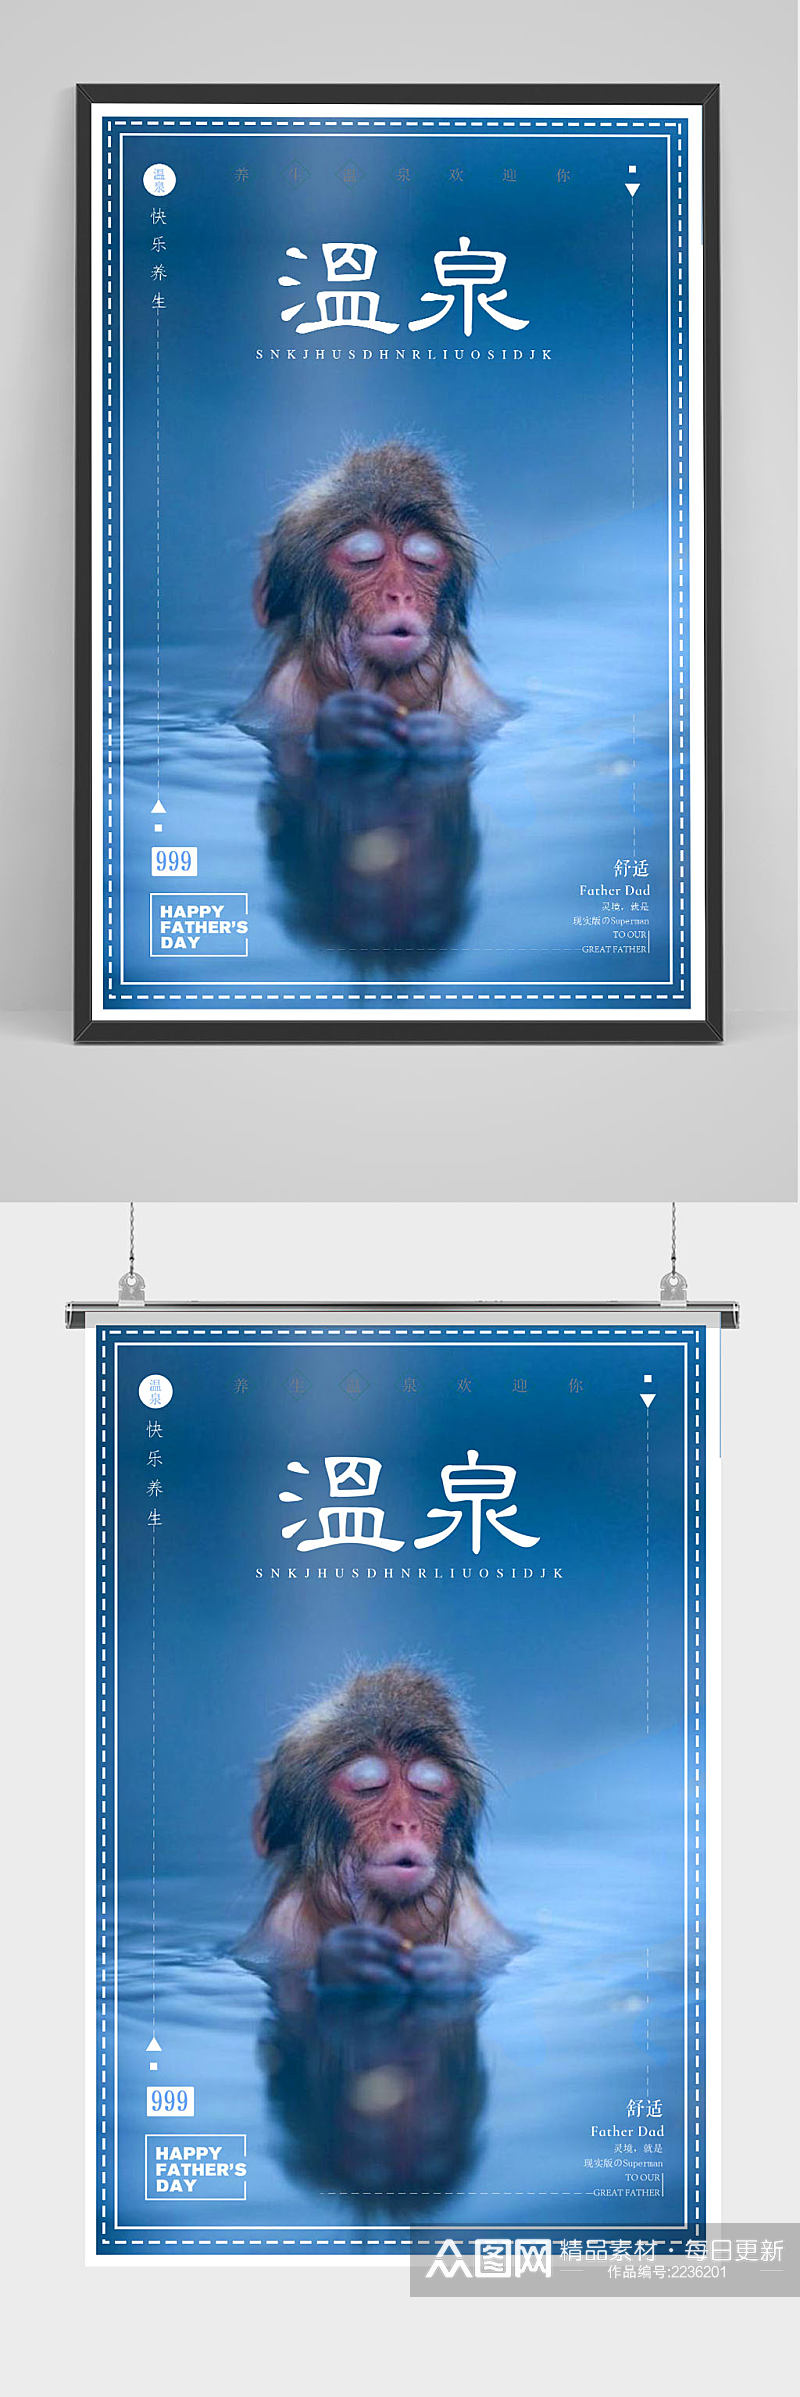 浪漫温泉北海道日本旅游宣传促销海报素材